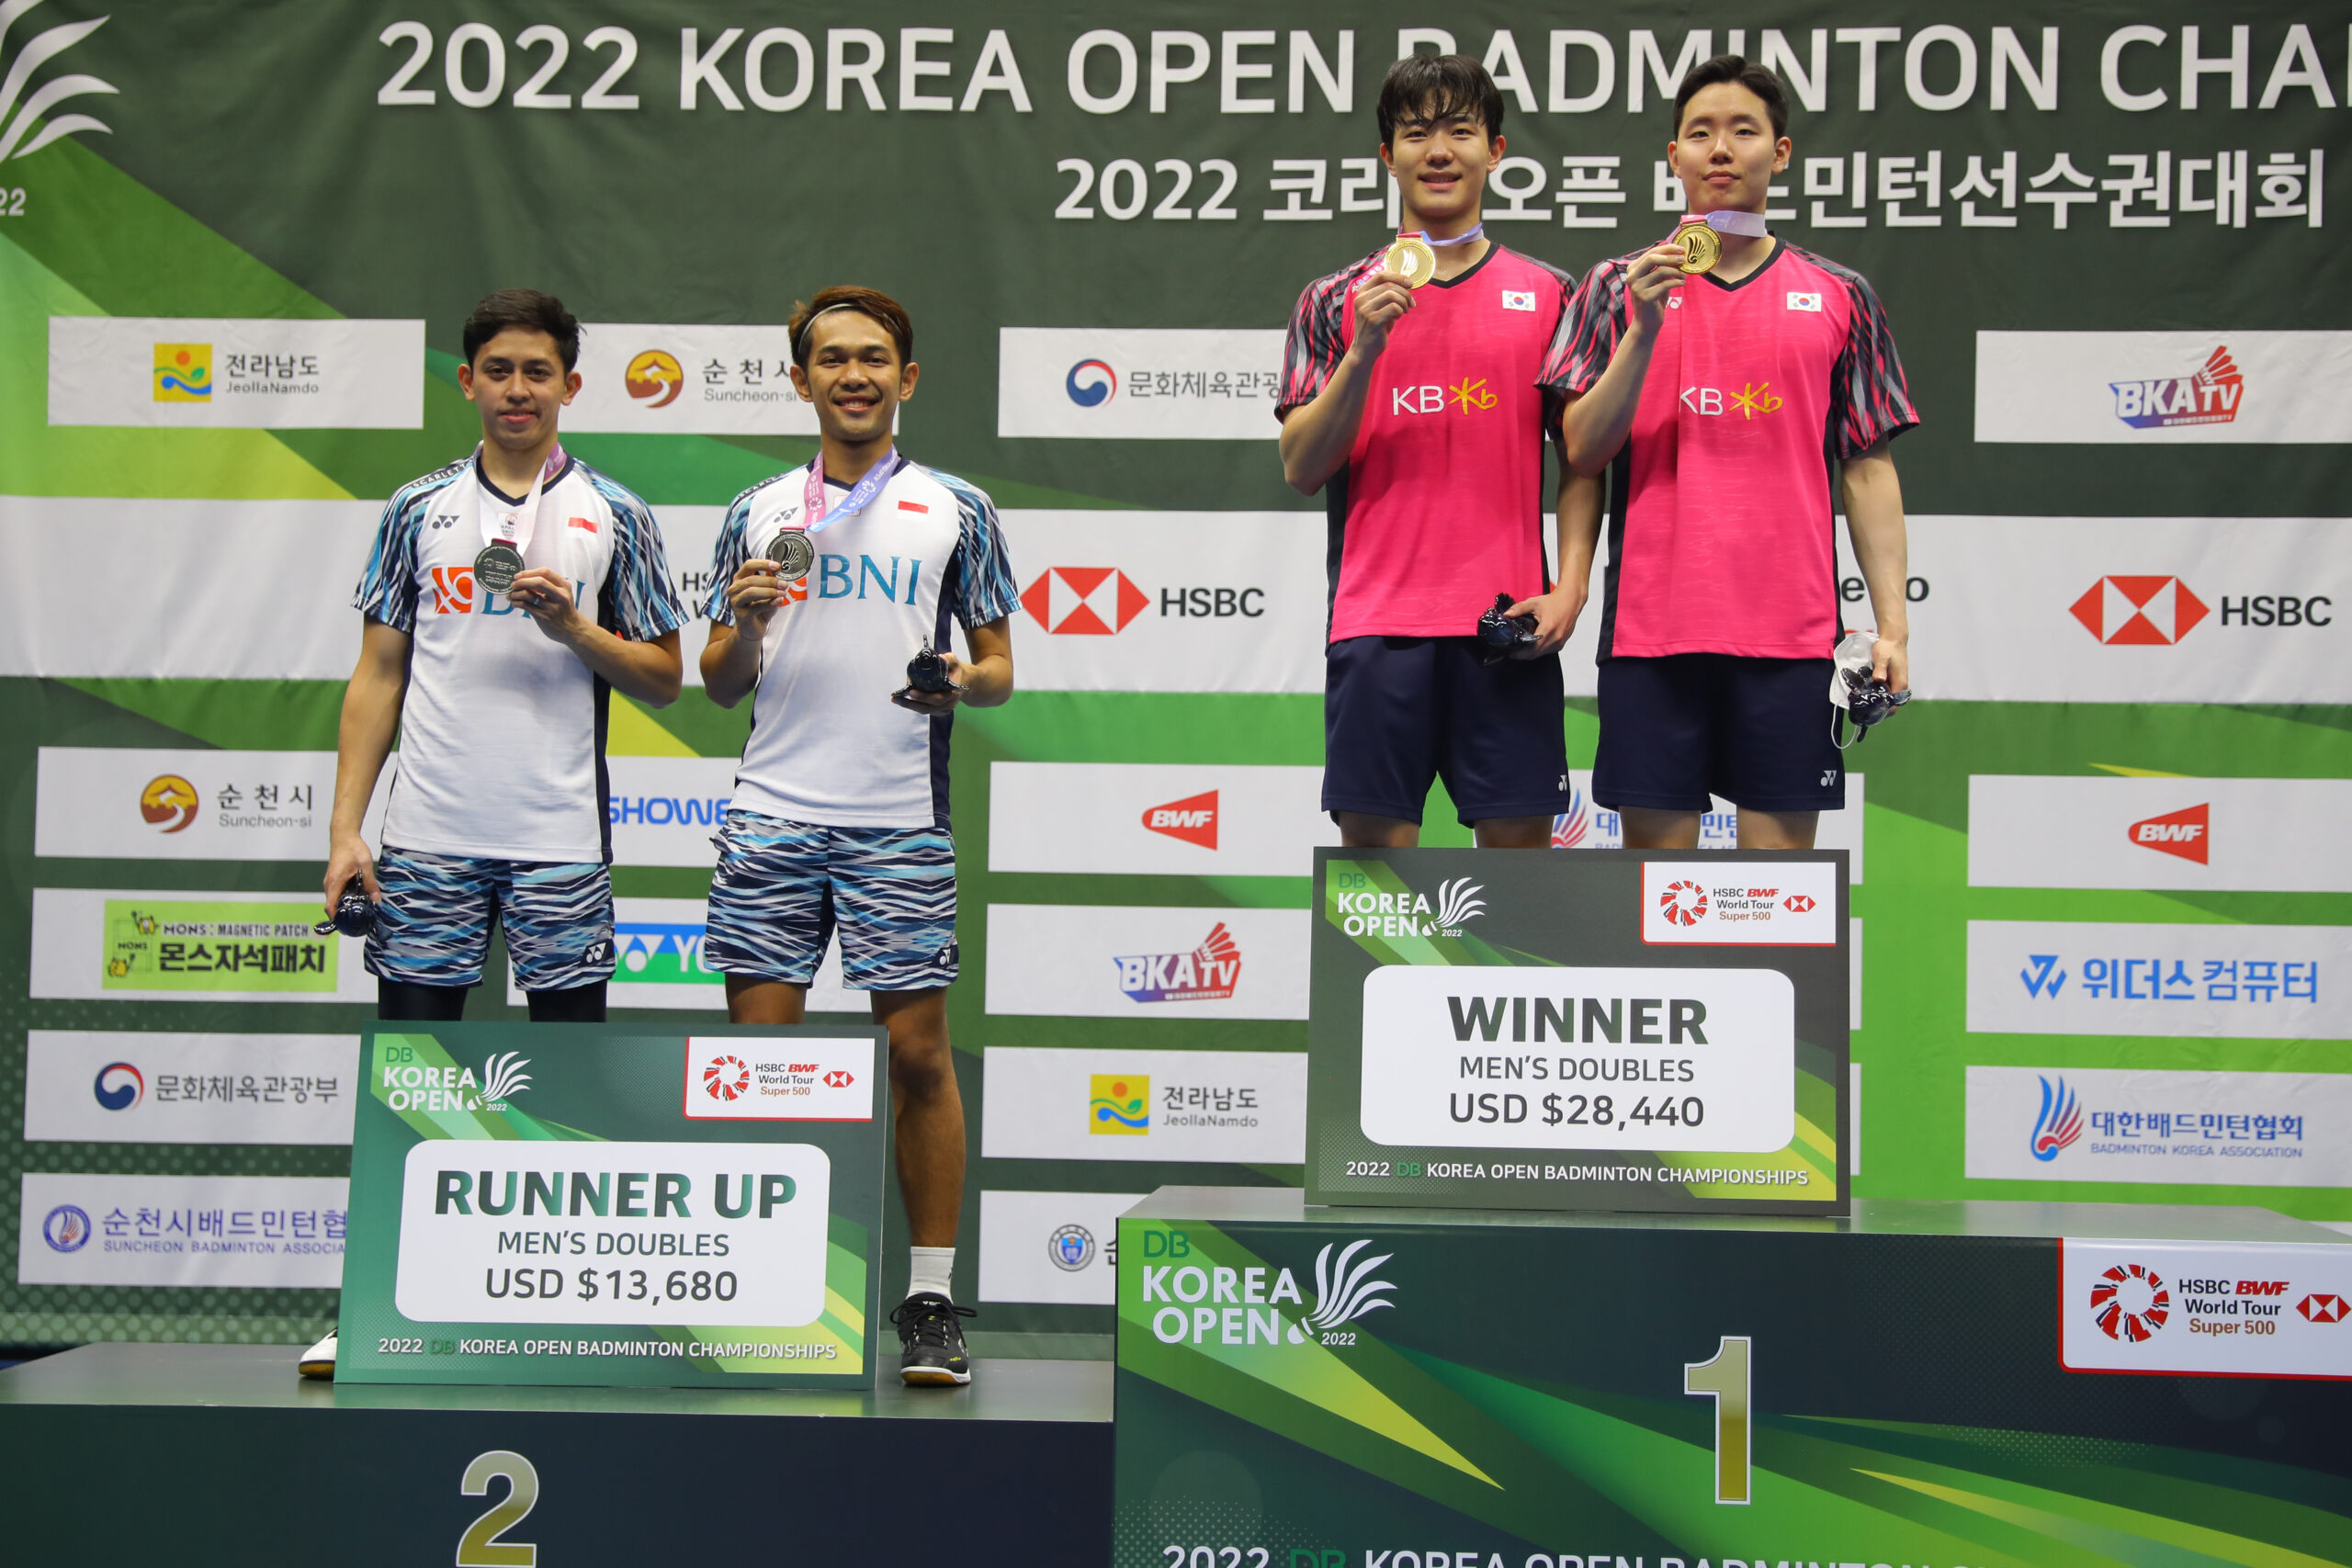 Korea Open 2022